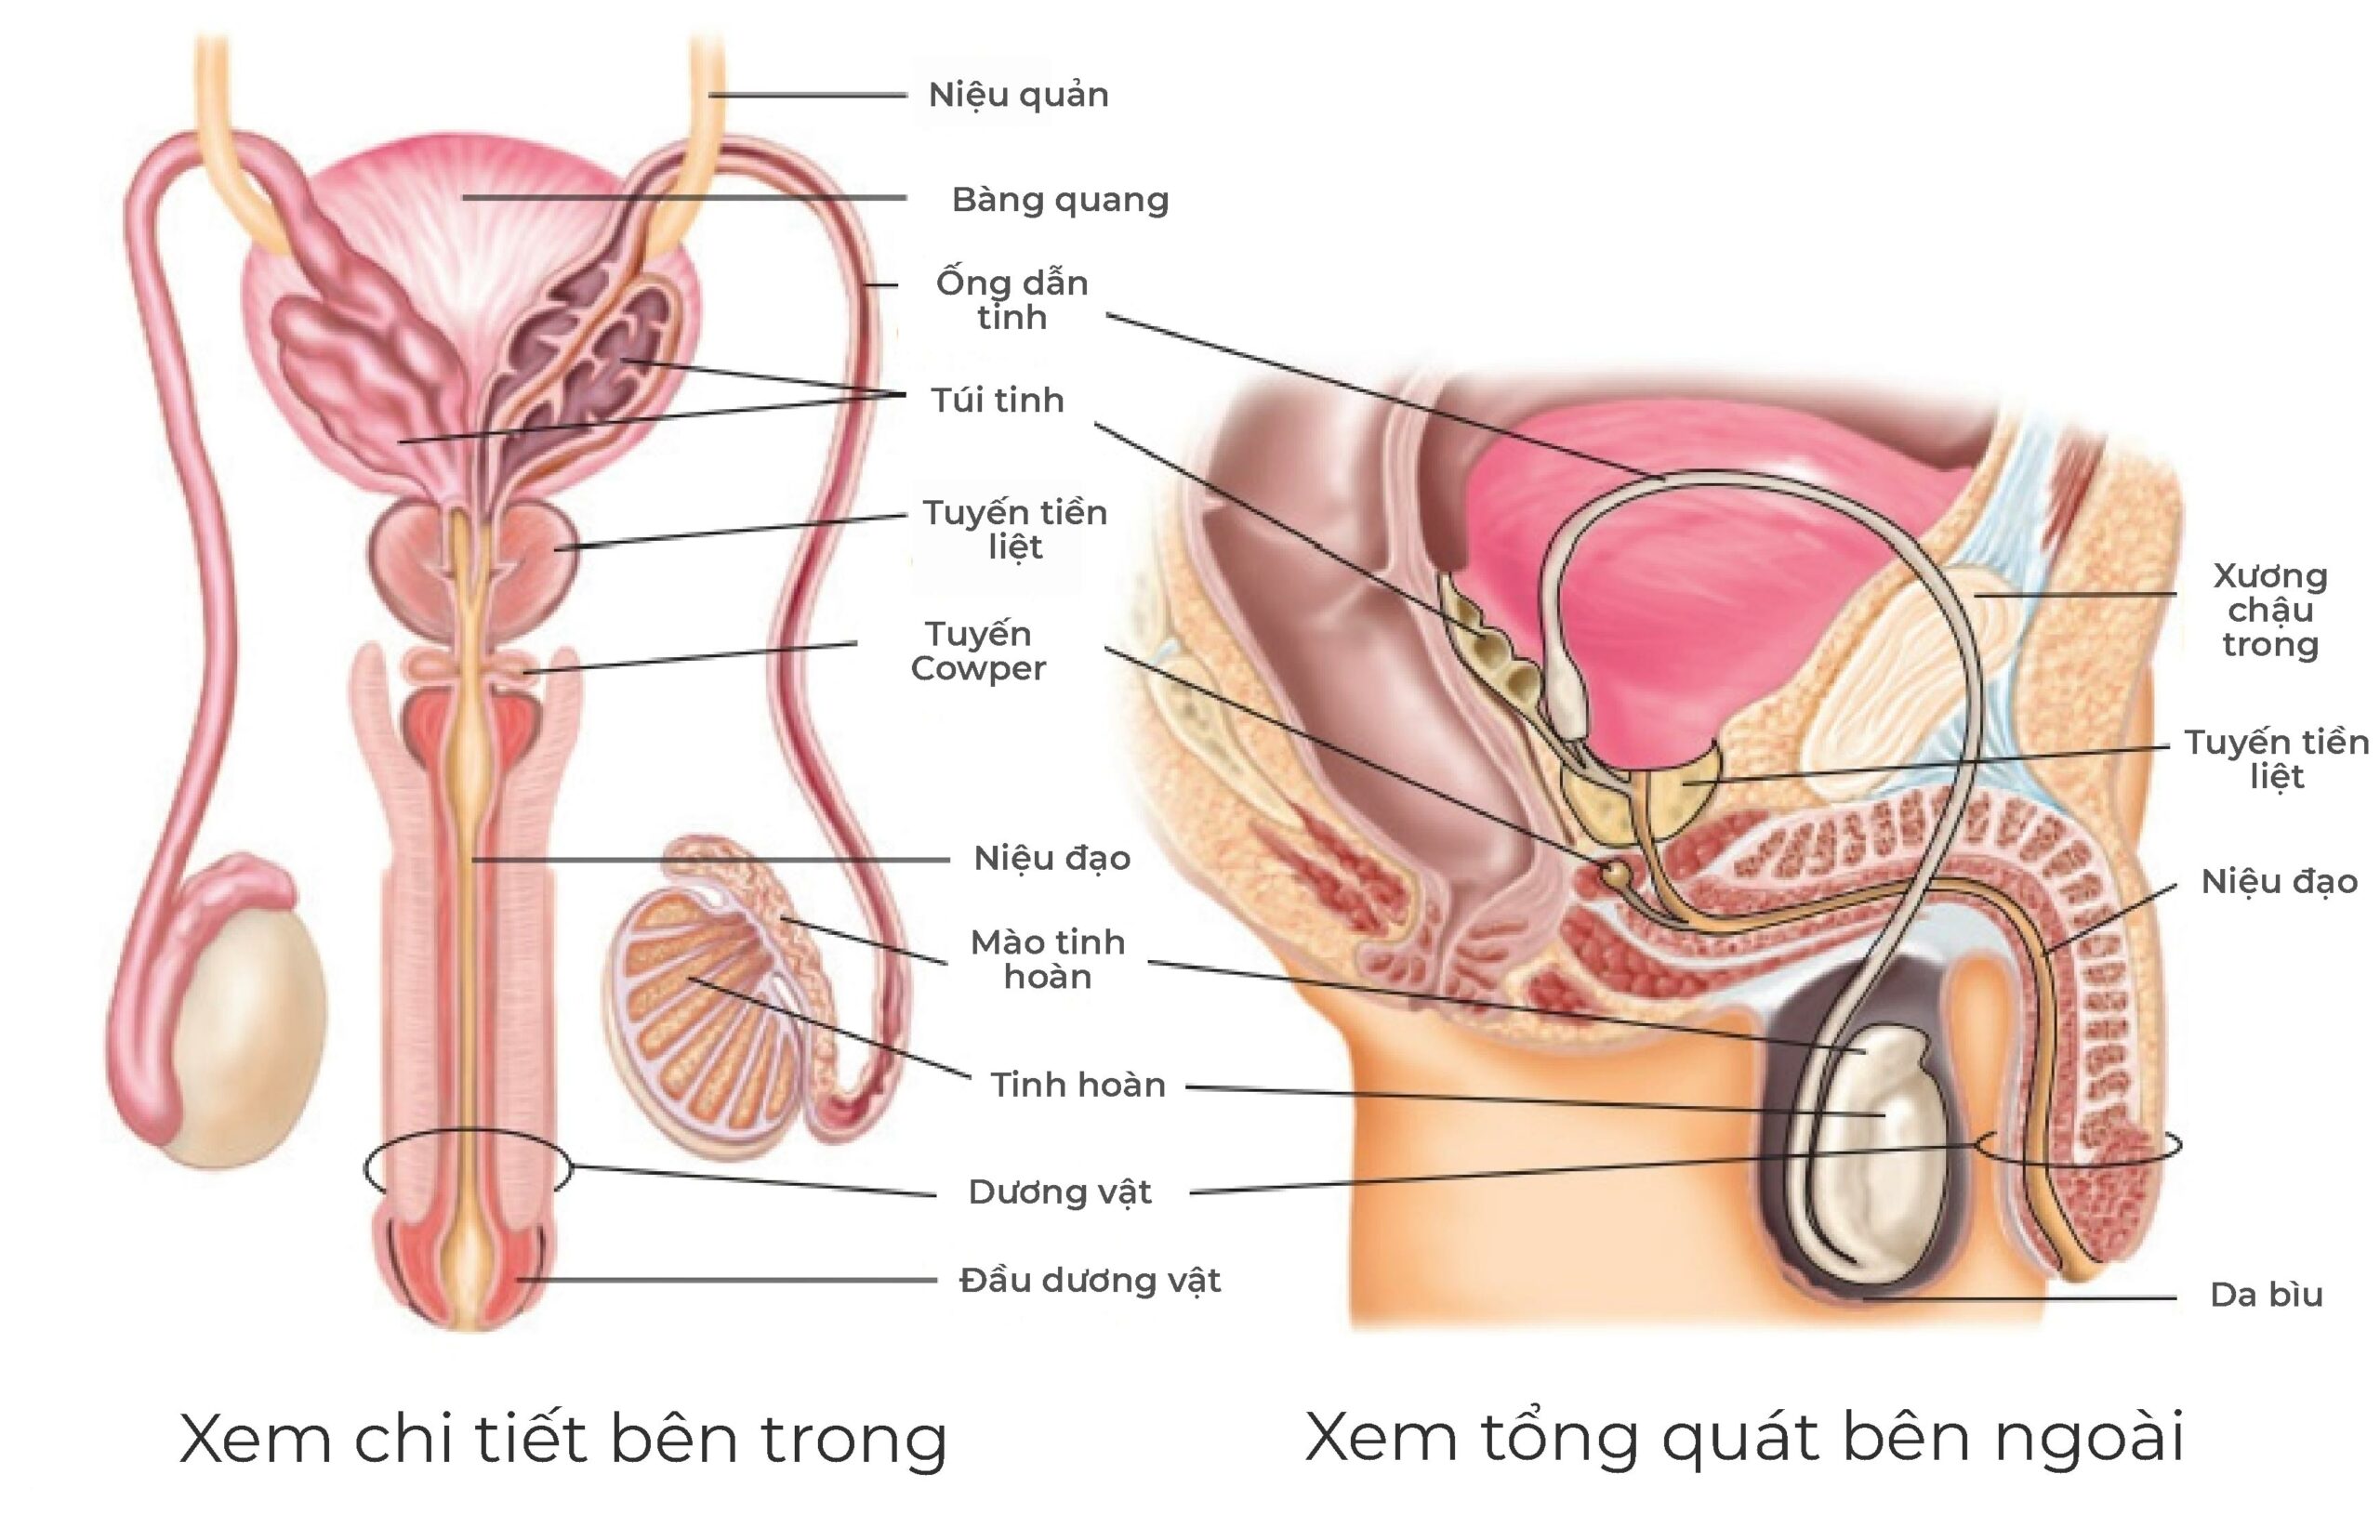 Hình ảnh tổng quát cấu tạo bộ phận sinh dục nam giới